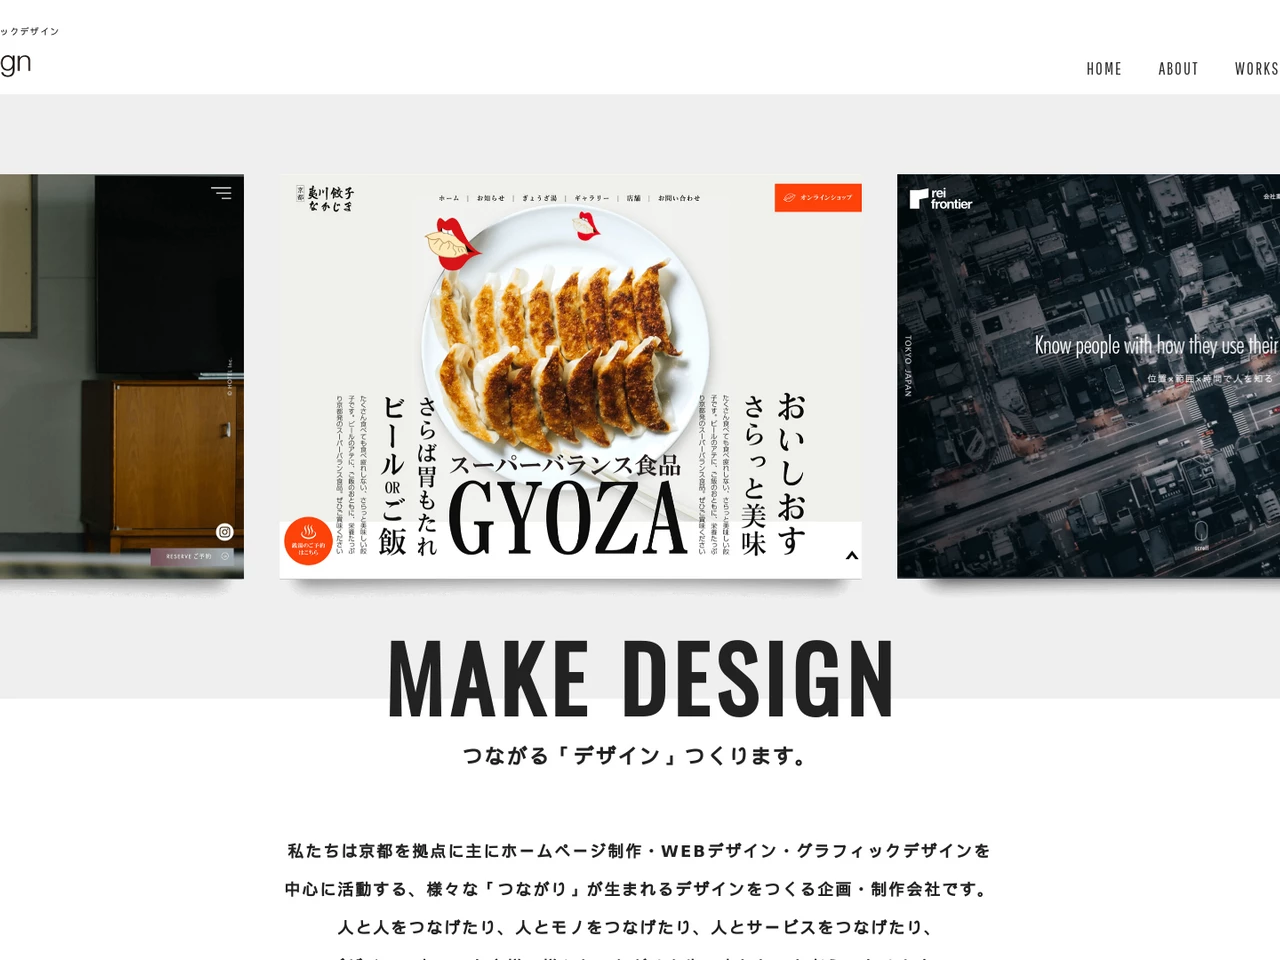 株式会社Tukiyomi design